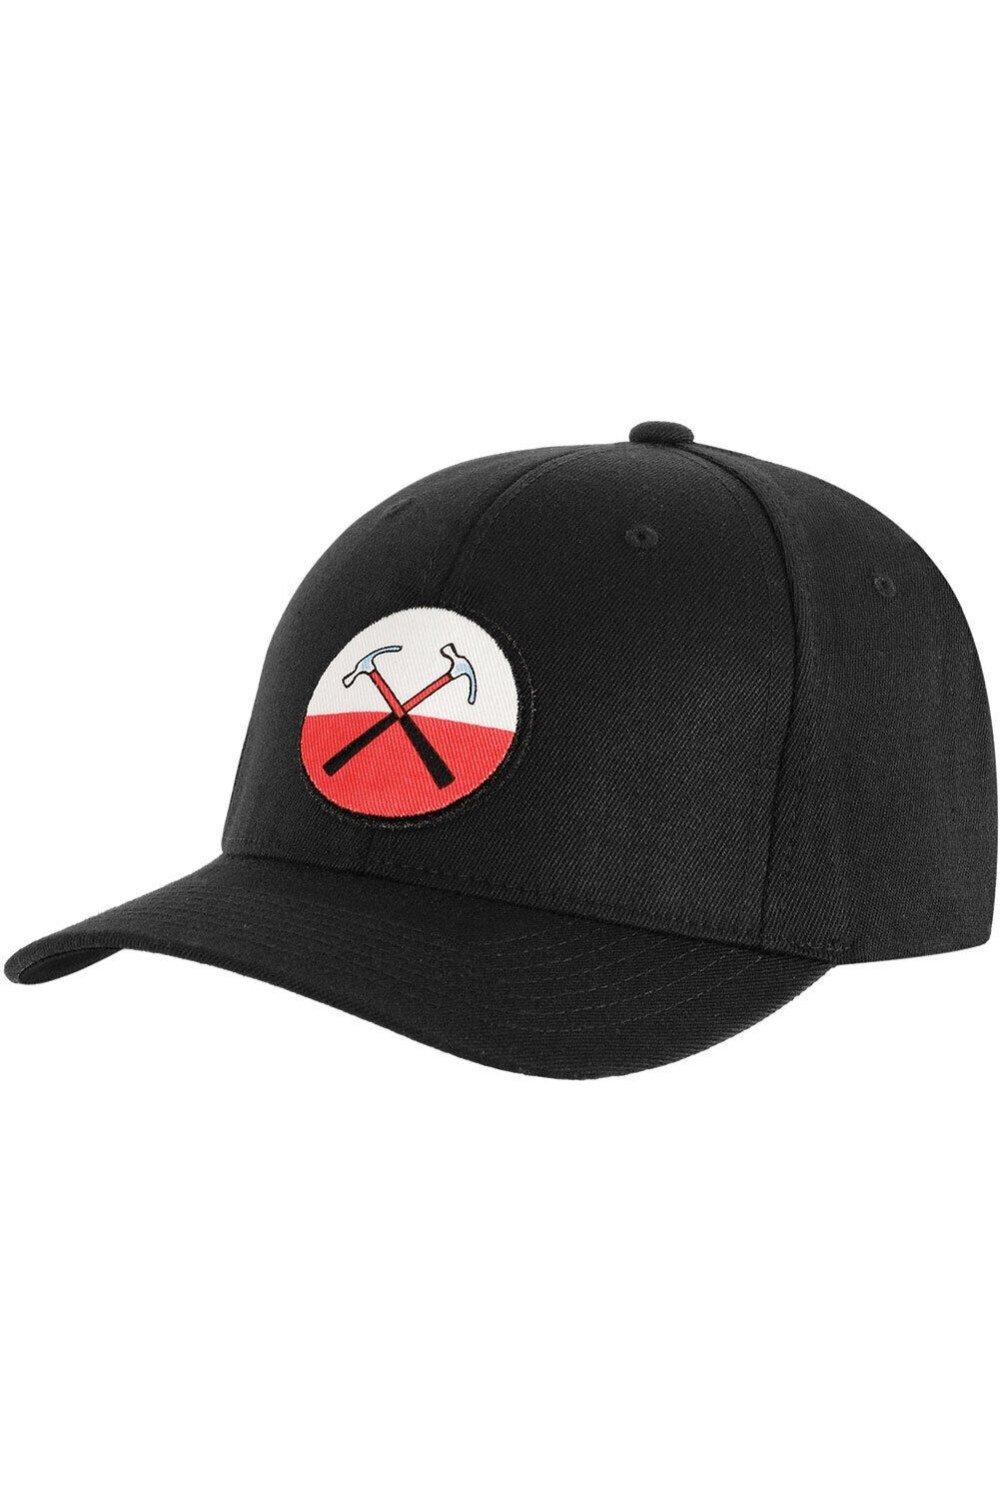 Бейсбольная кепка с логотипом The Wall Hammers Pink Floyd, черный